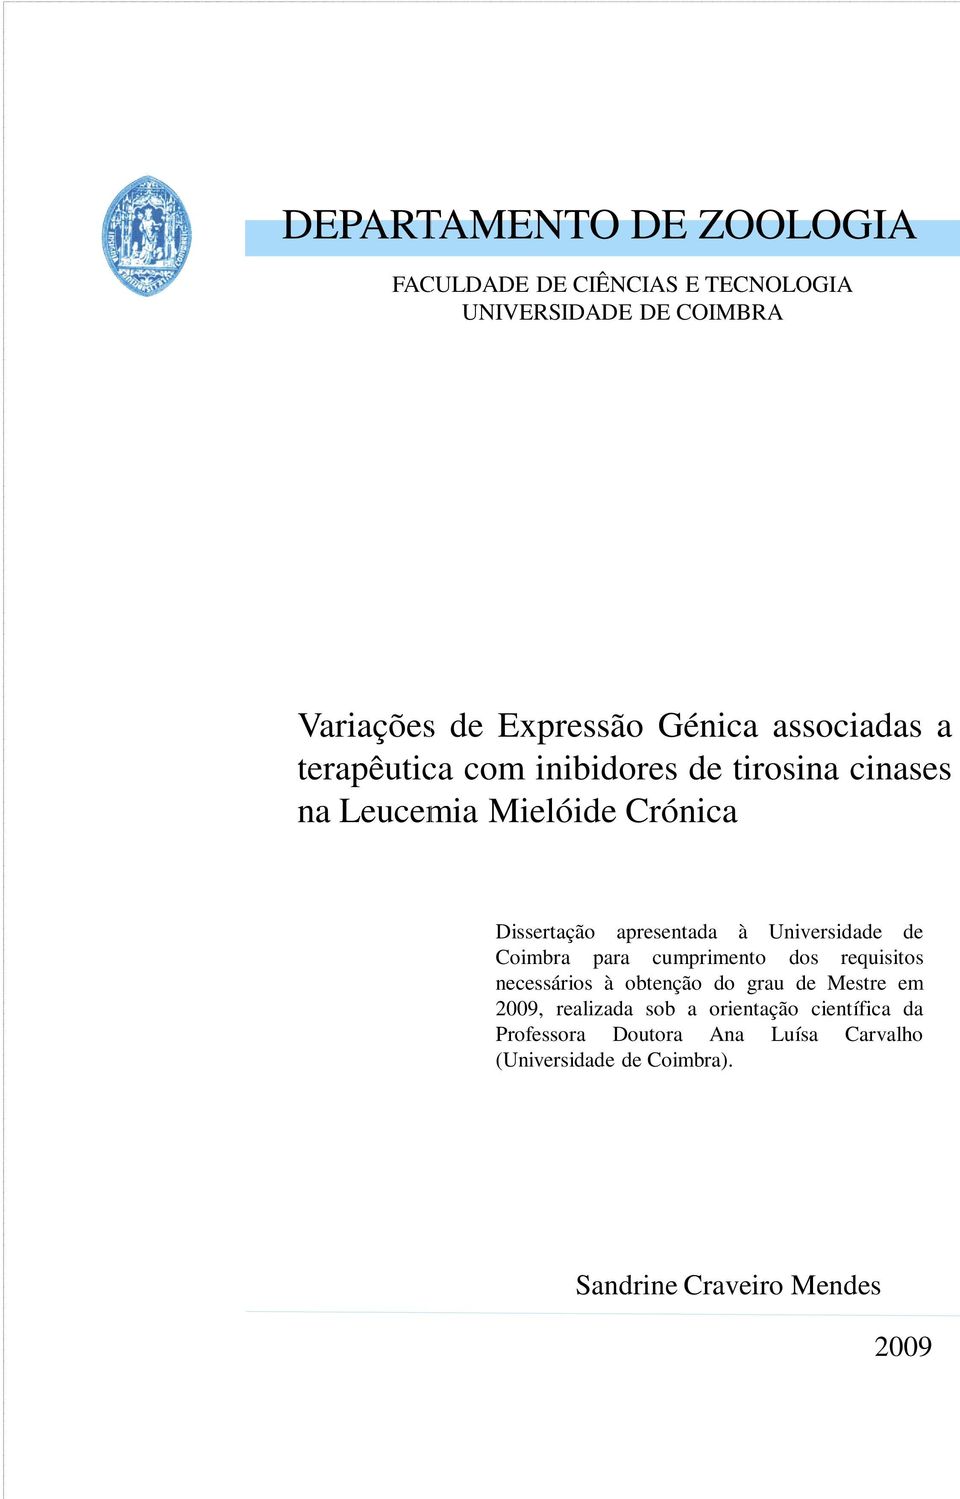 Universidade de Coimbra para cumprimento dos requisitos necessários à obtenção do grau de Mestre em 2009, realizada